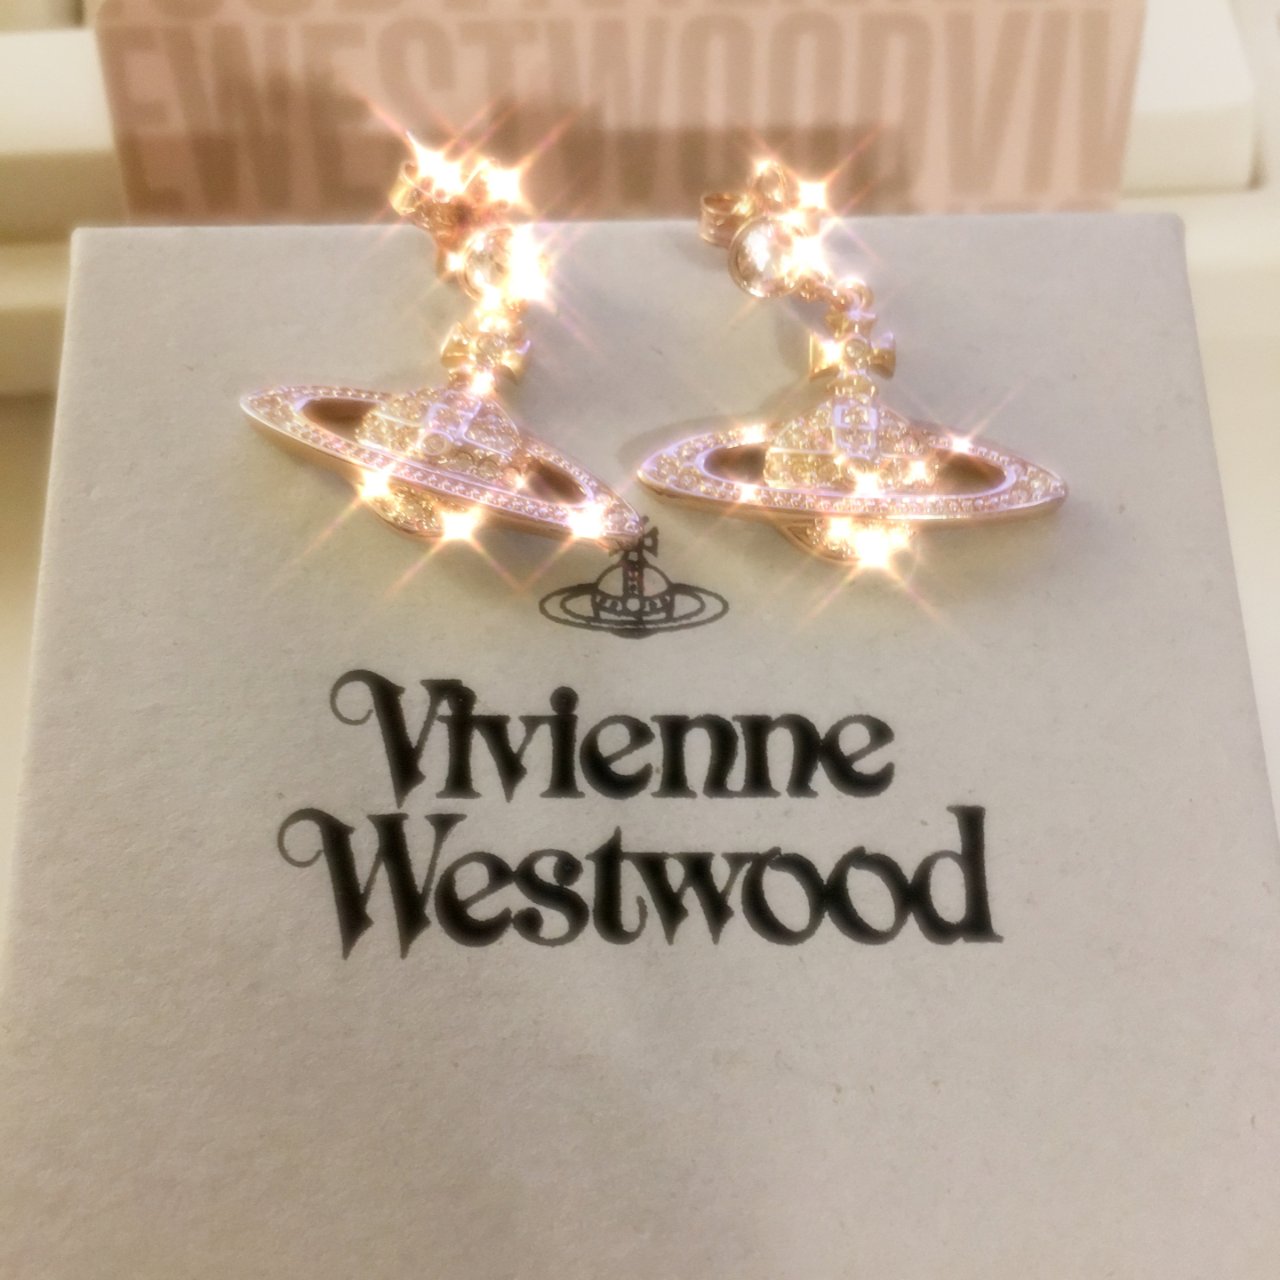 Vivienne Westwood 薇薇安·威斯特伍德